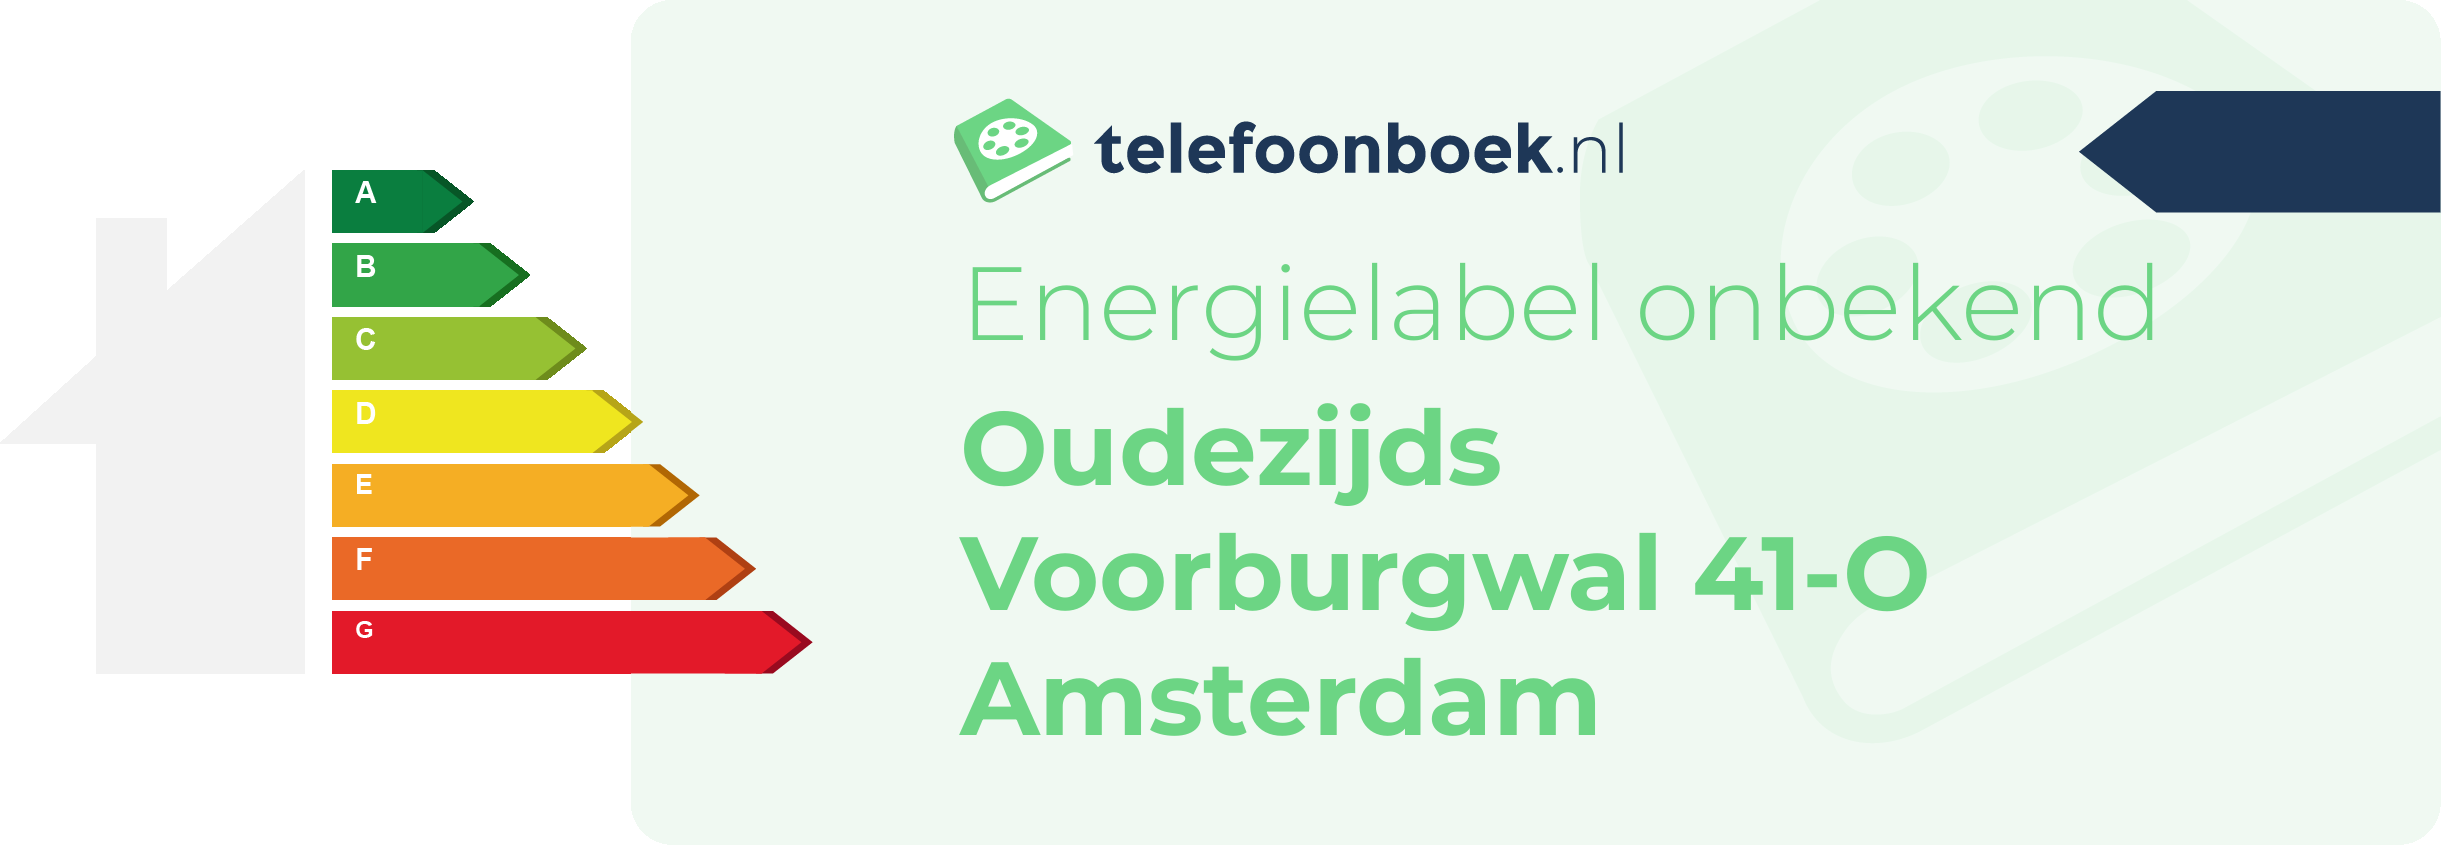 Energielabel Oudezijds Voorburgwal 41-O Amsterdam